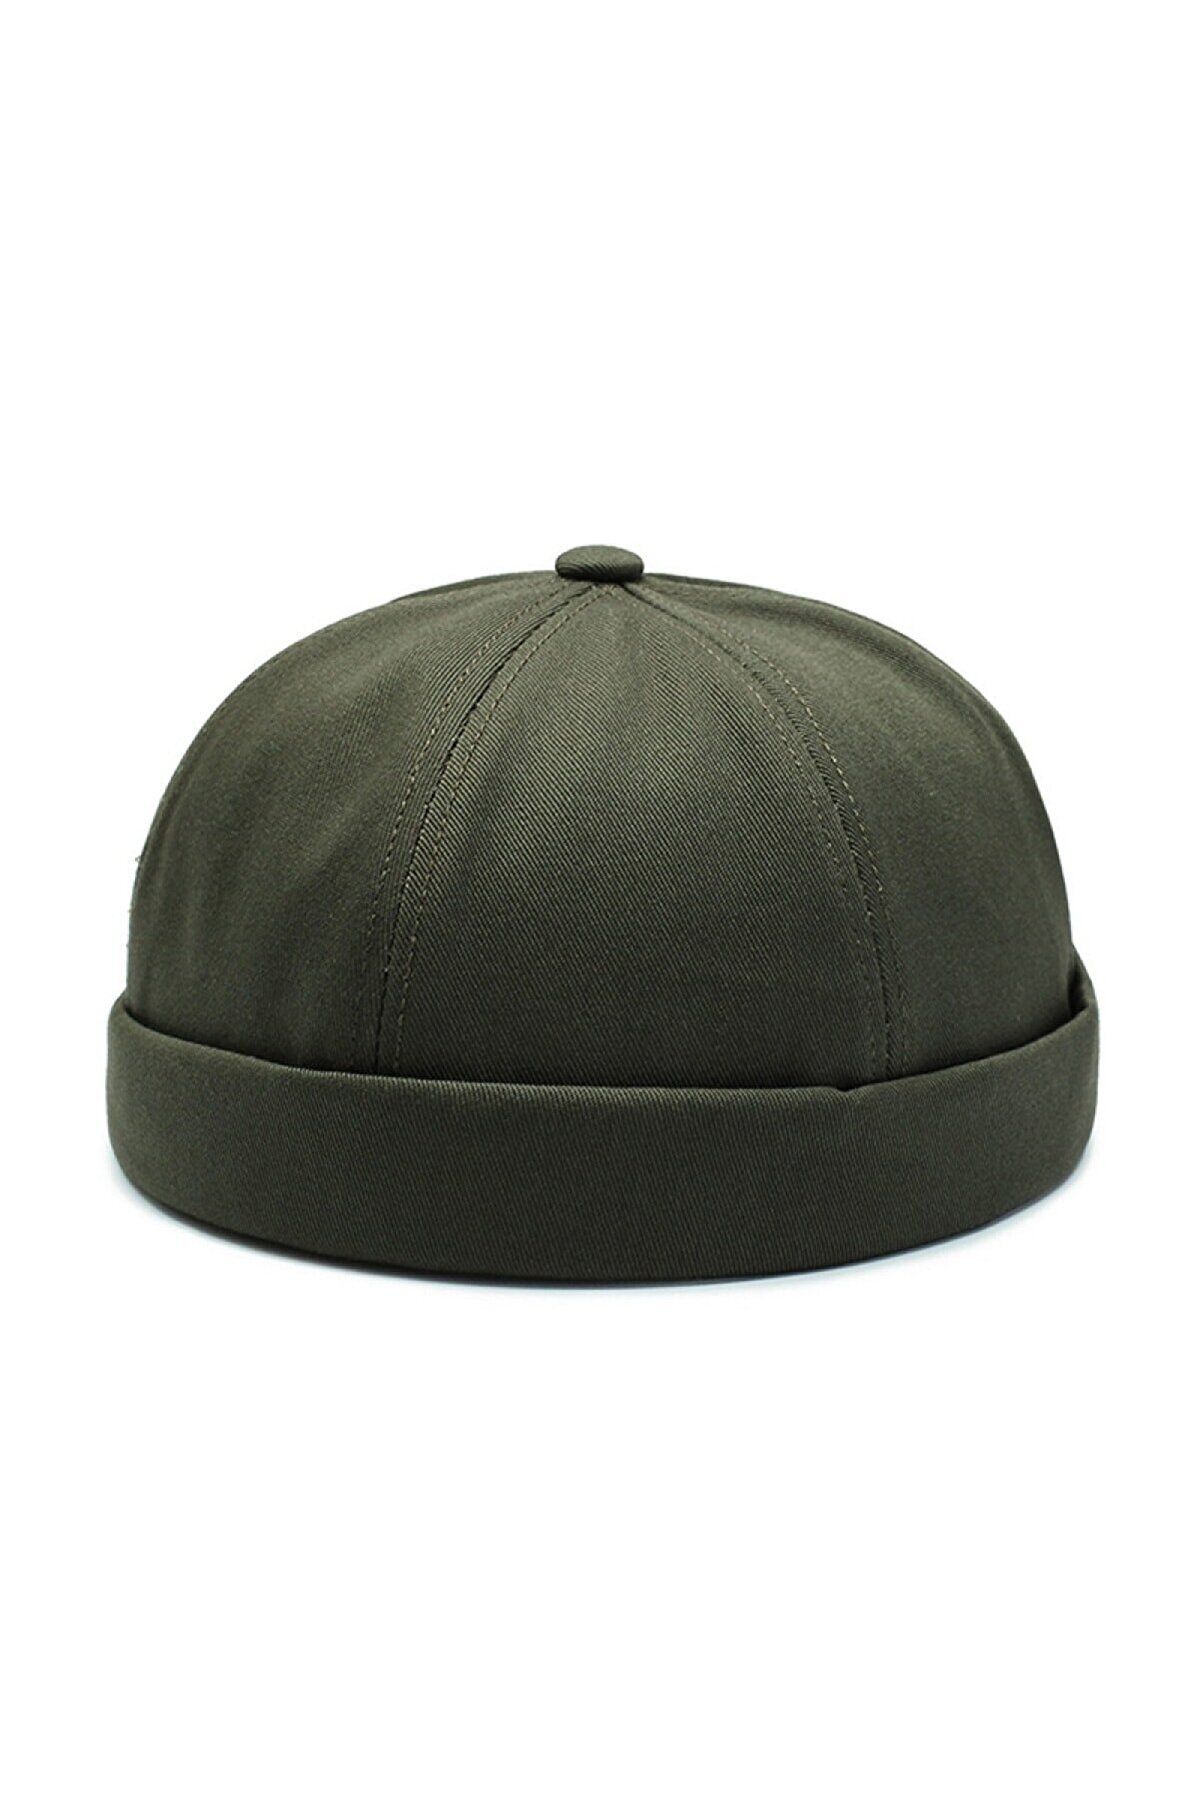 Rupen Kraft Unisex %100 Pamuk Cap Ayarlanabilir Docker Şapka Yazlık Takke Şapka Retro Şapka Haki Takke Şapka